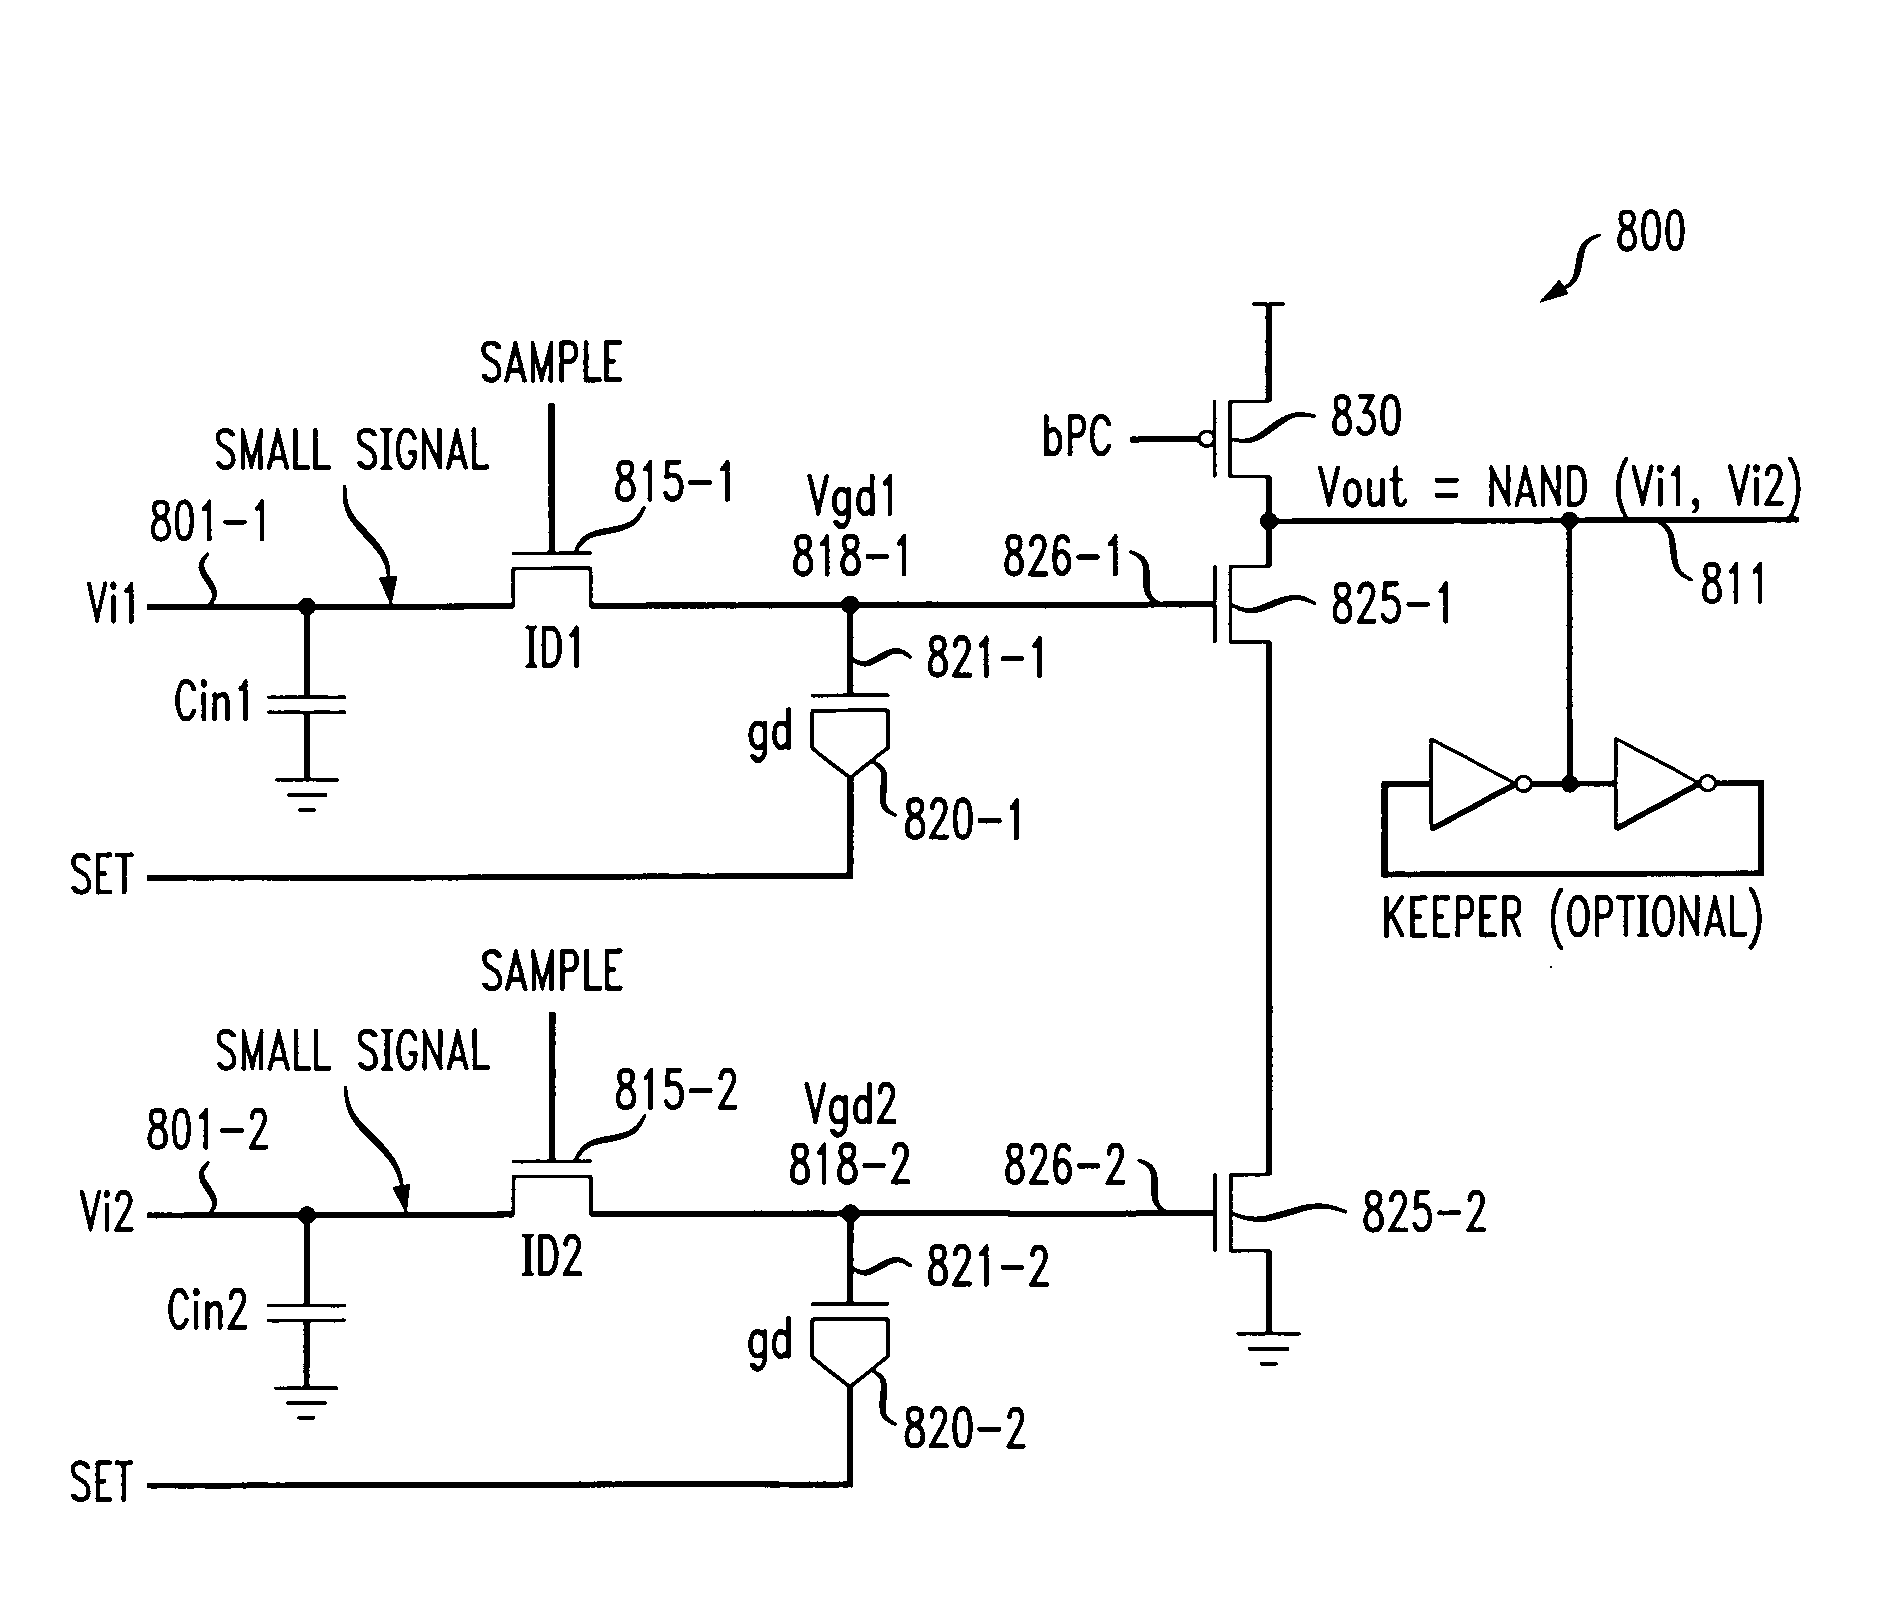 Logic circuits utilizing gated diode sensing